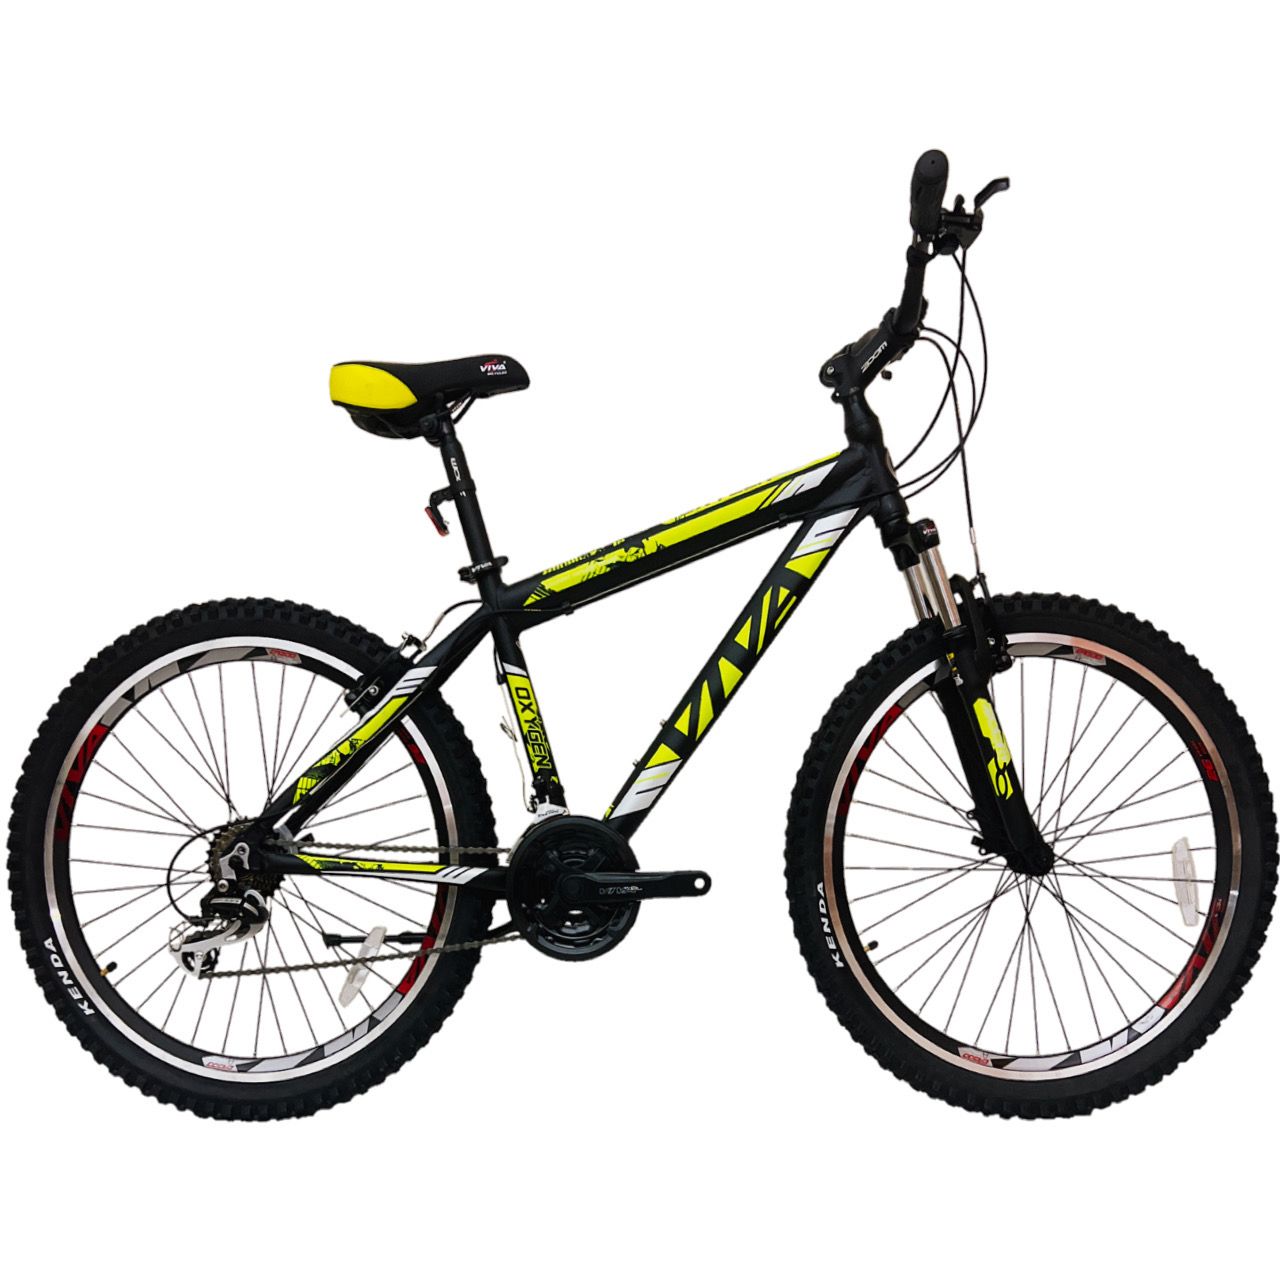 دوچرخه کوهستان ویوا مدل OXYGEN کد 100 سایز طوقه 26 -  - 2